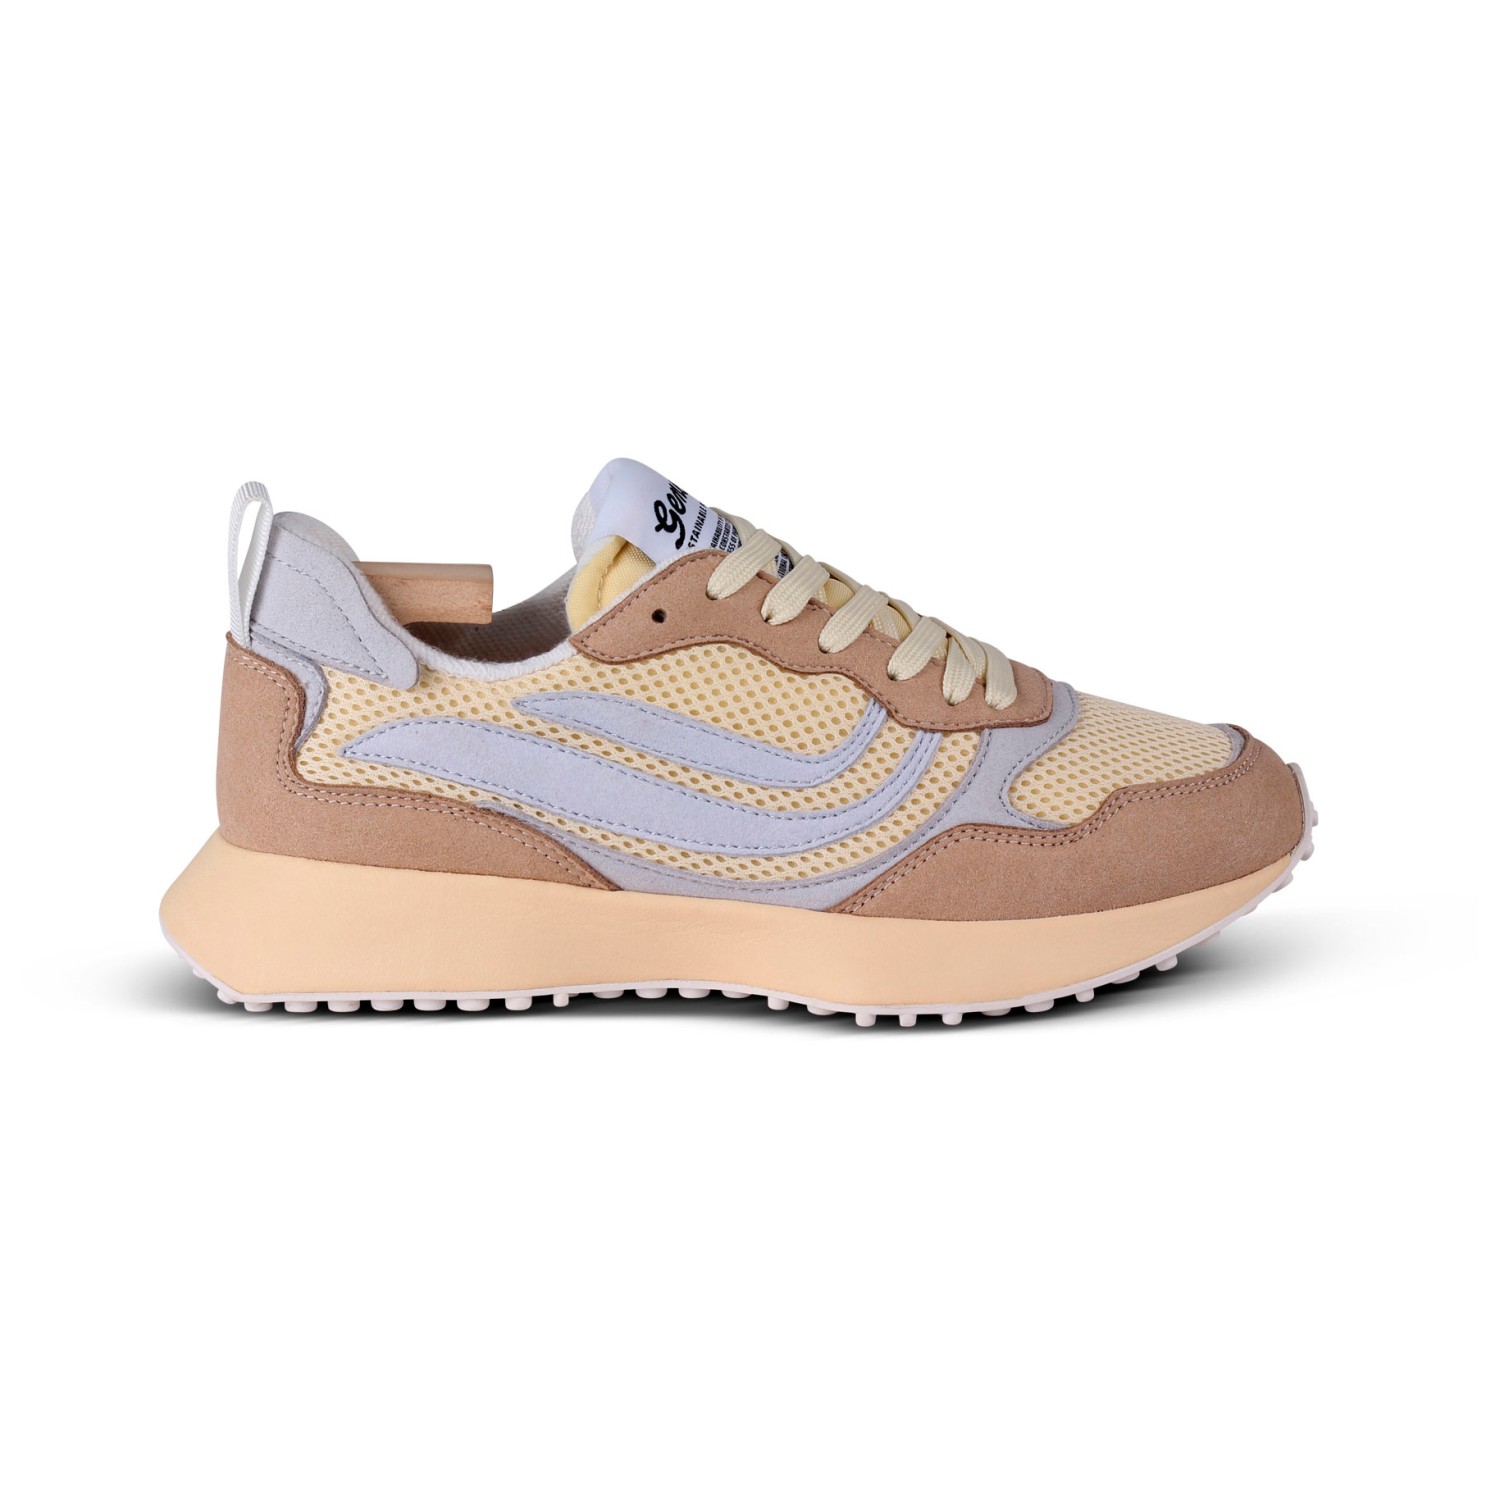 Кроссовки Genesis Footwear G Marathon Multipastel, цвет Light Beige/Light Grey/Sky кроссовки recykers corsocomo beige